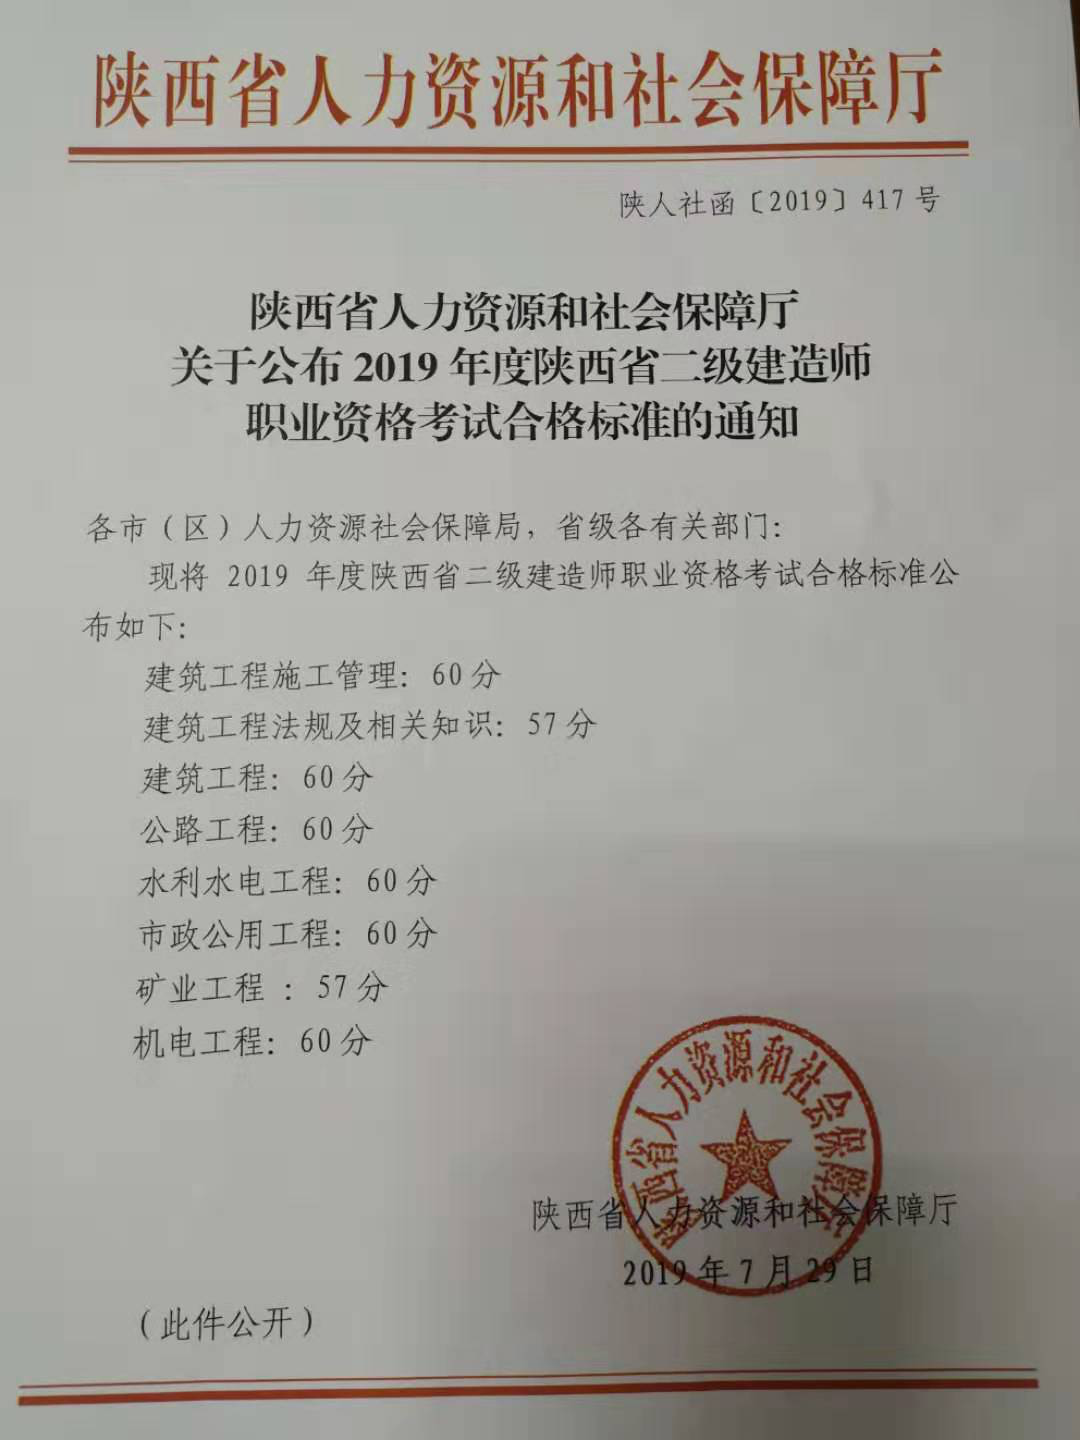 2019年陕西二级建造师考试合格标准已公布